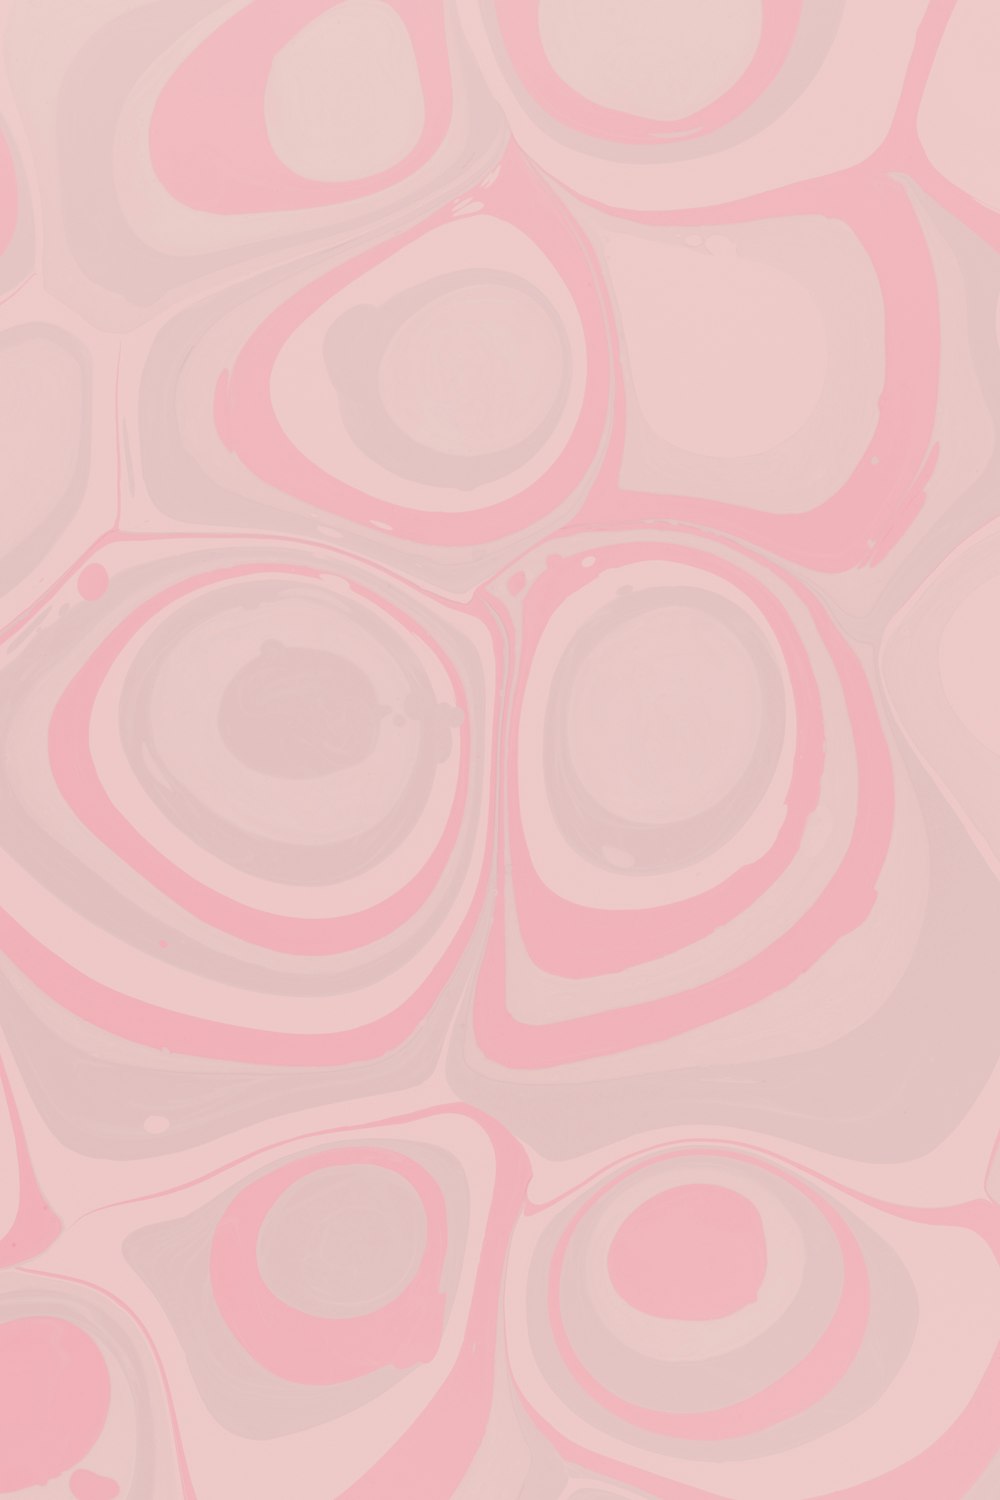 ilustração do coração rosa e branco